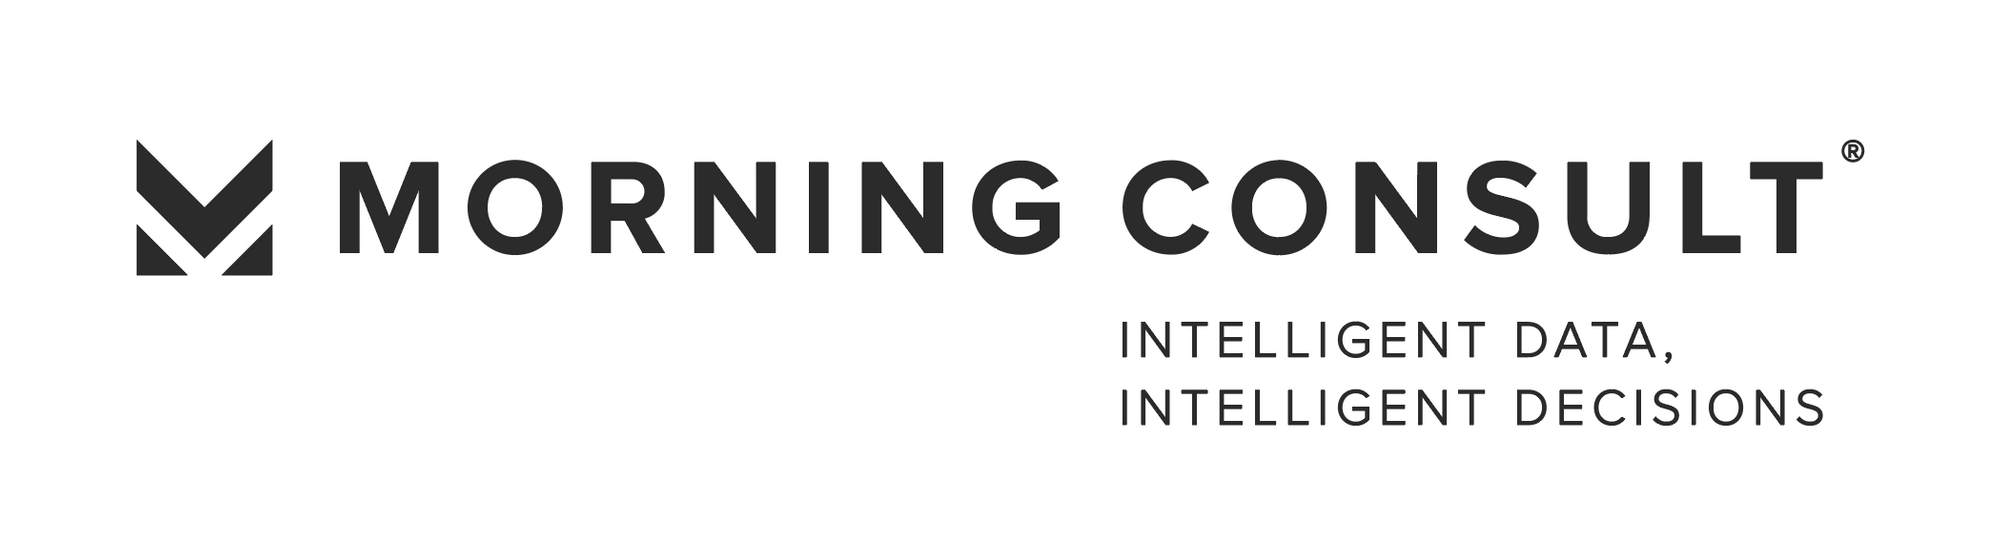 Morning Consult Logo - Morning Consult